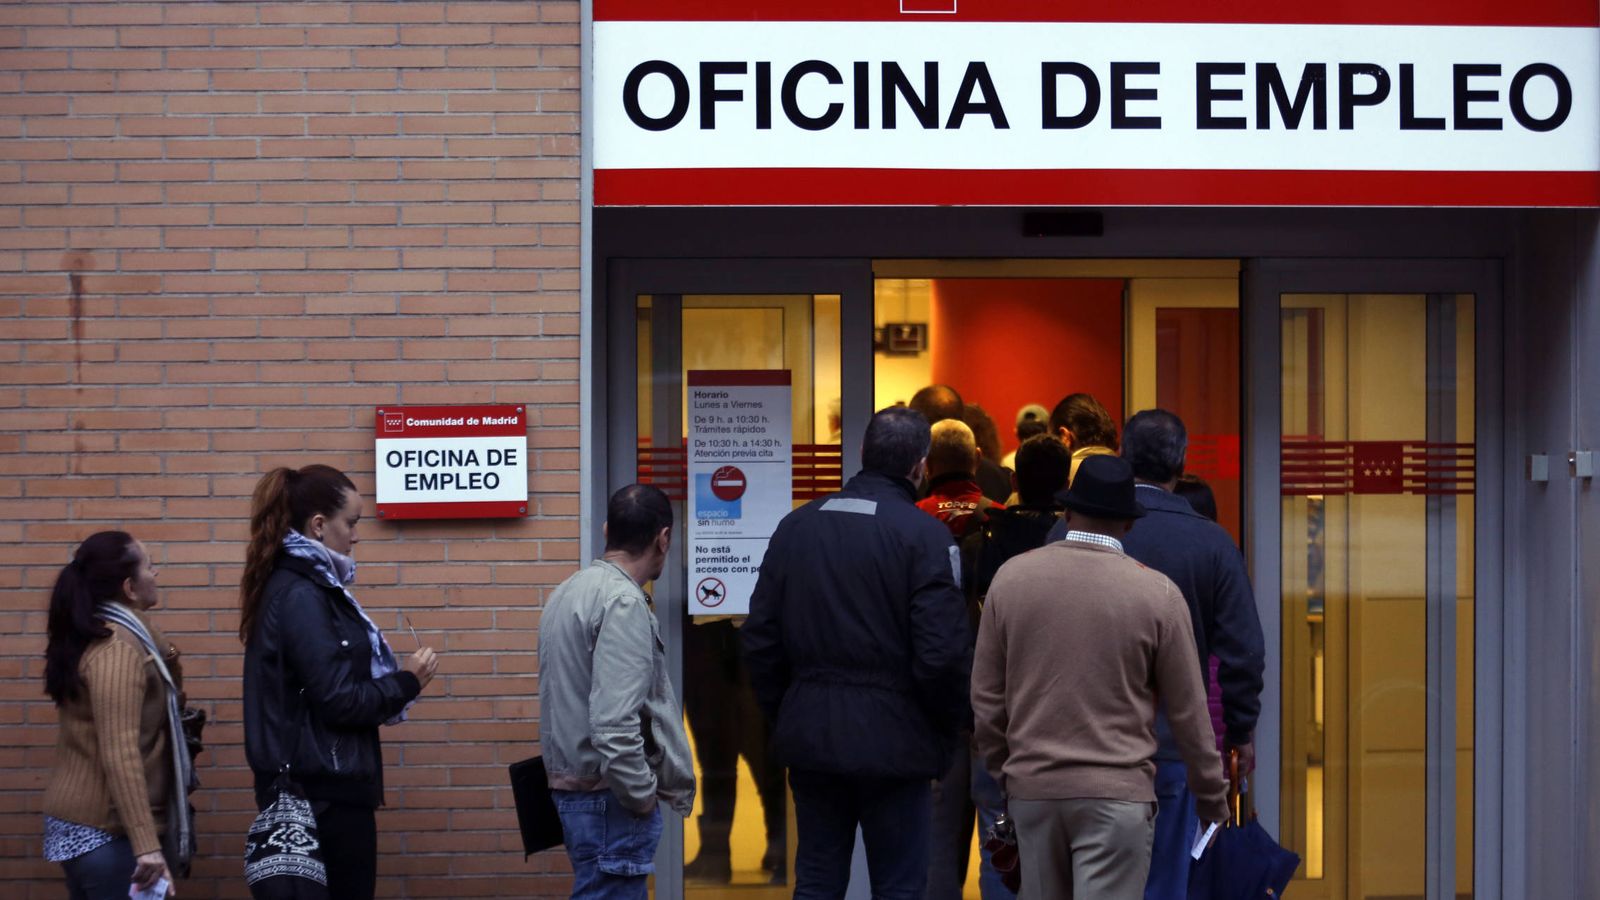 Foto: Oficina de empleo en Madrid. (Reuters)